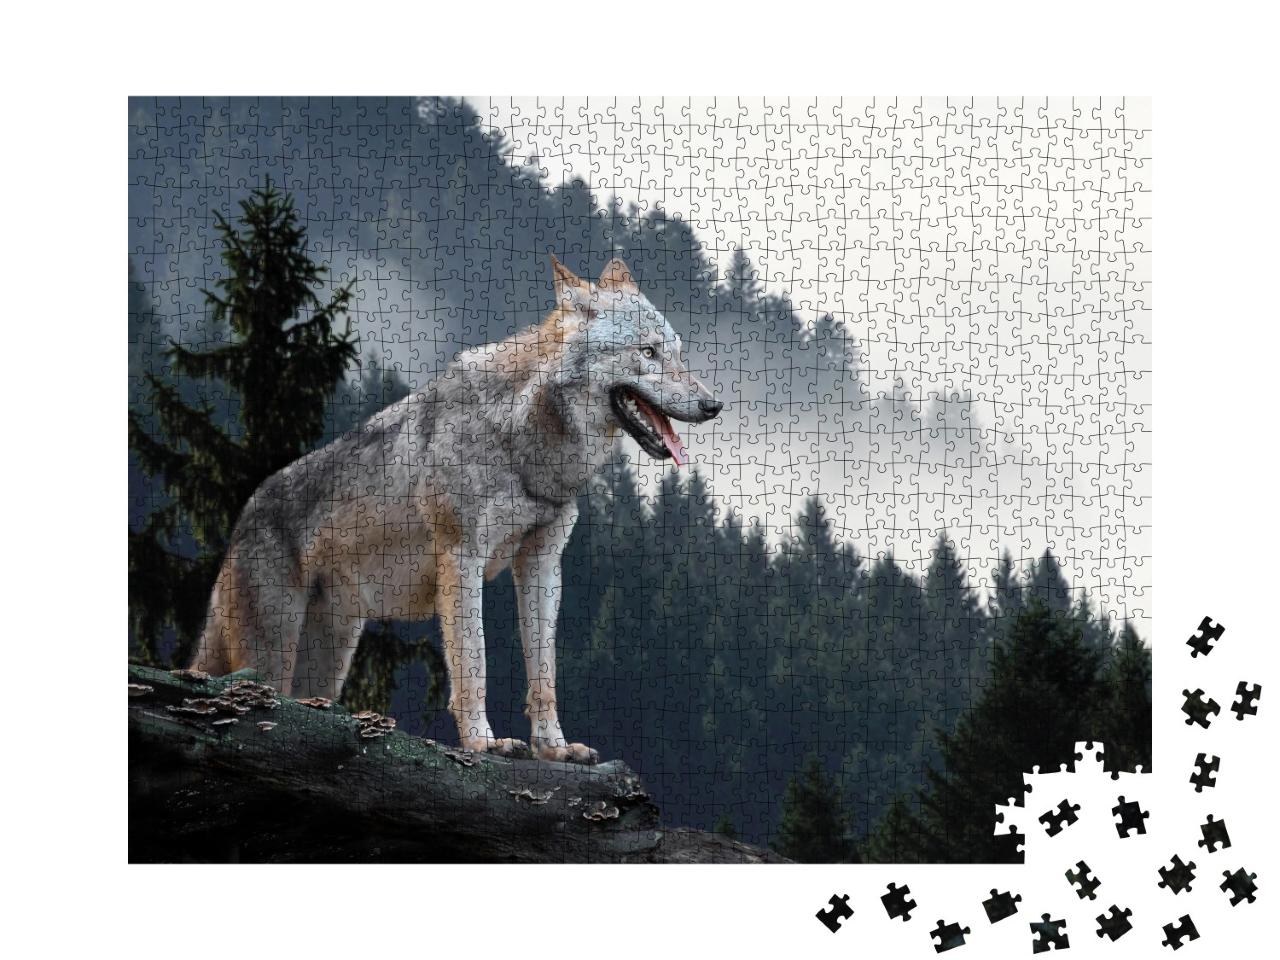 Puzzle de 1000 pièces « Timberwolf dans les montagnes »